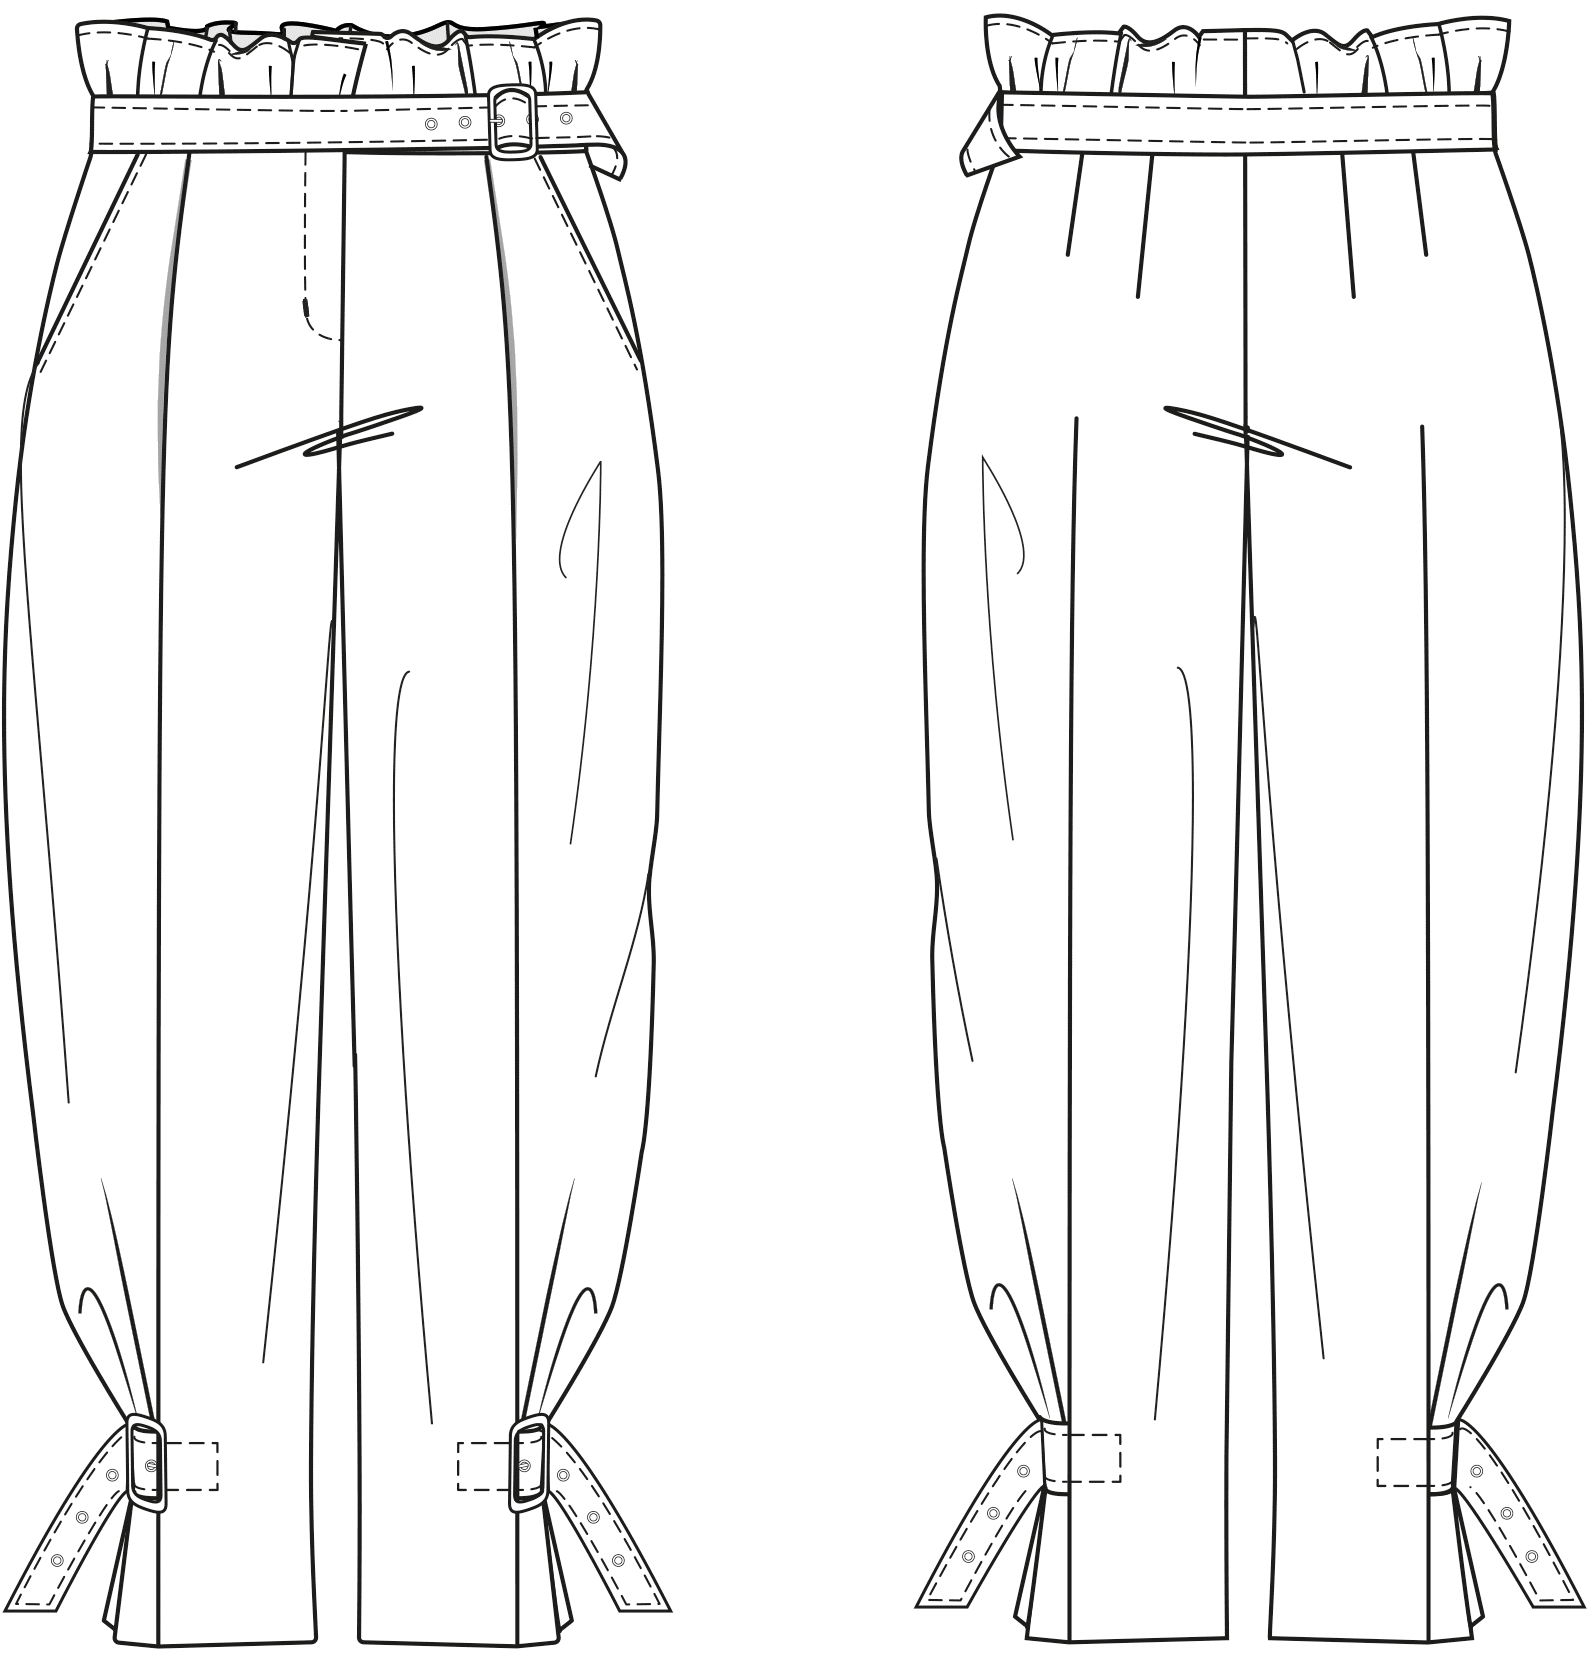 Die Vorder- und Rückansicht der technische Zeichnung einer Hose ist zu sehen. Diesen Schnitt findet man auf einem Schnittmusterbogen.